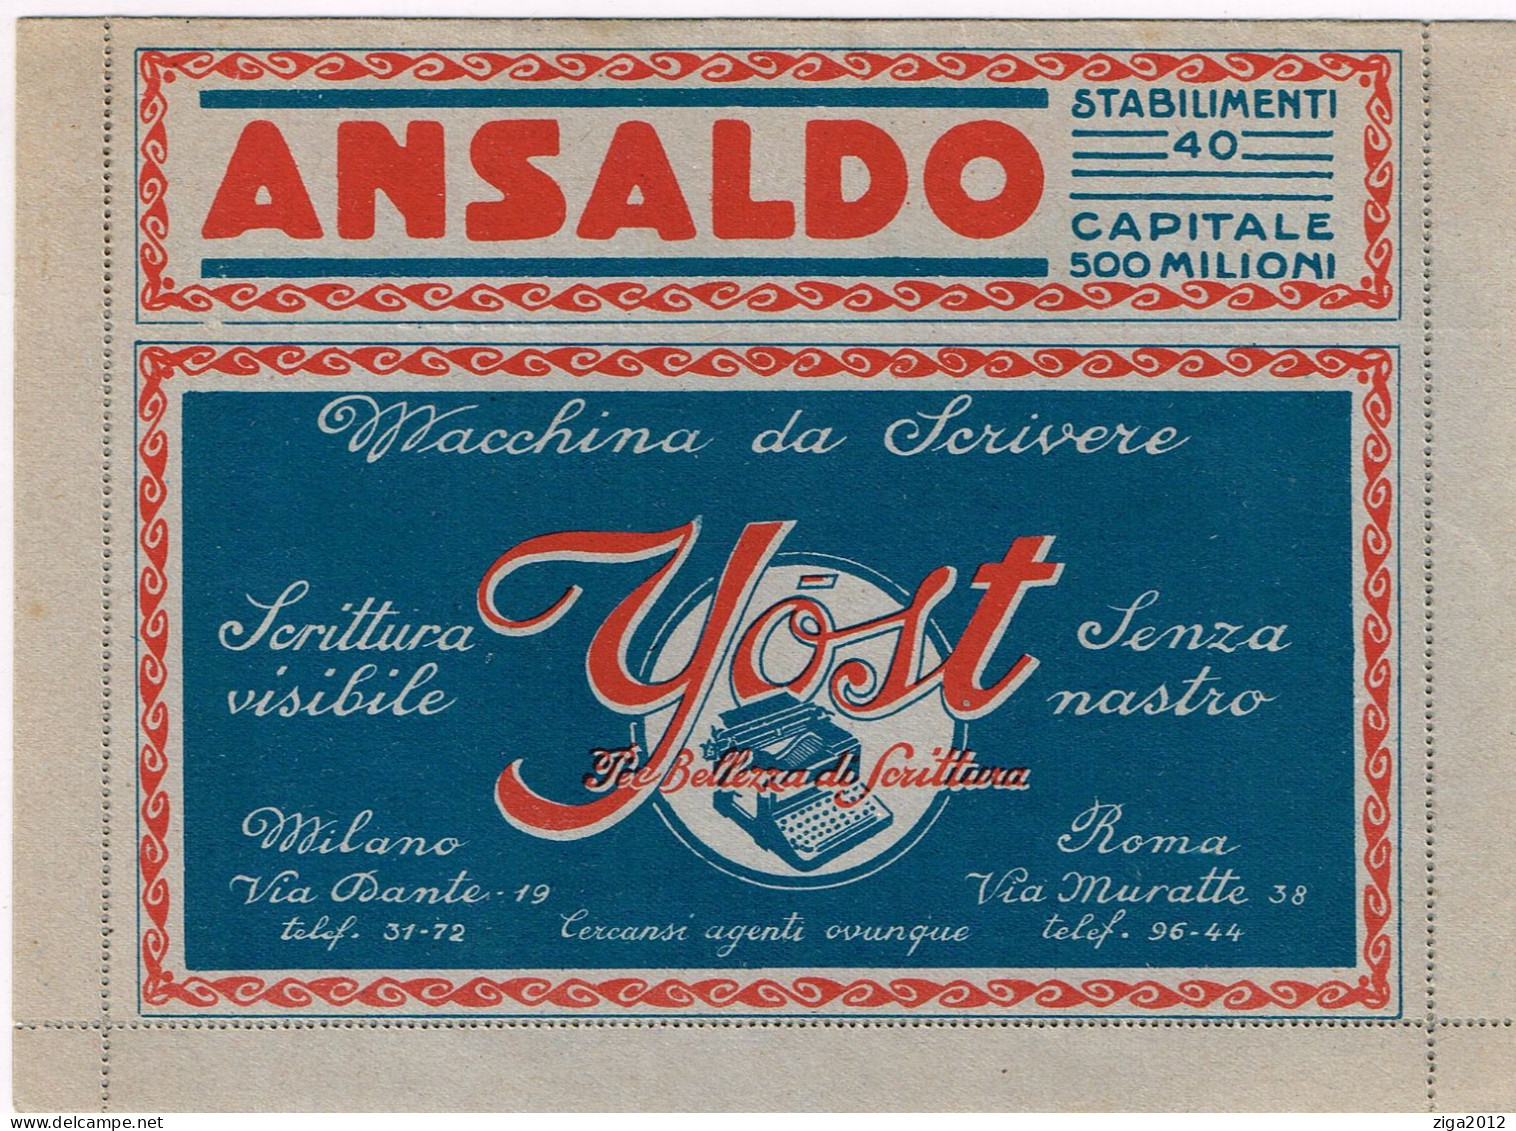 ITALY 1921 B.L.P. BUSTA LETTERA POSTALE CON C.25 I° TIPO NUOVA E COMPLETA - Publicité